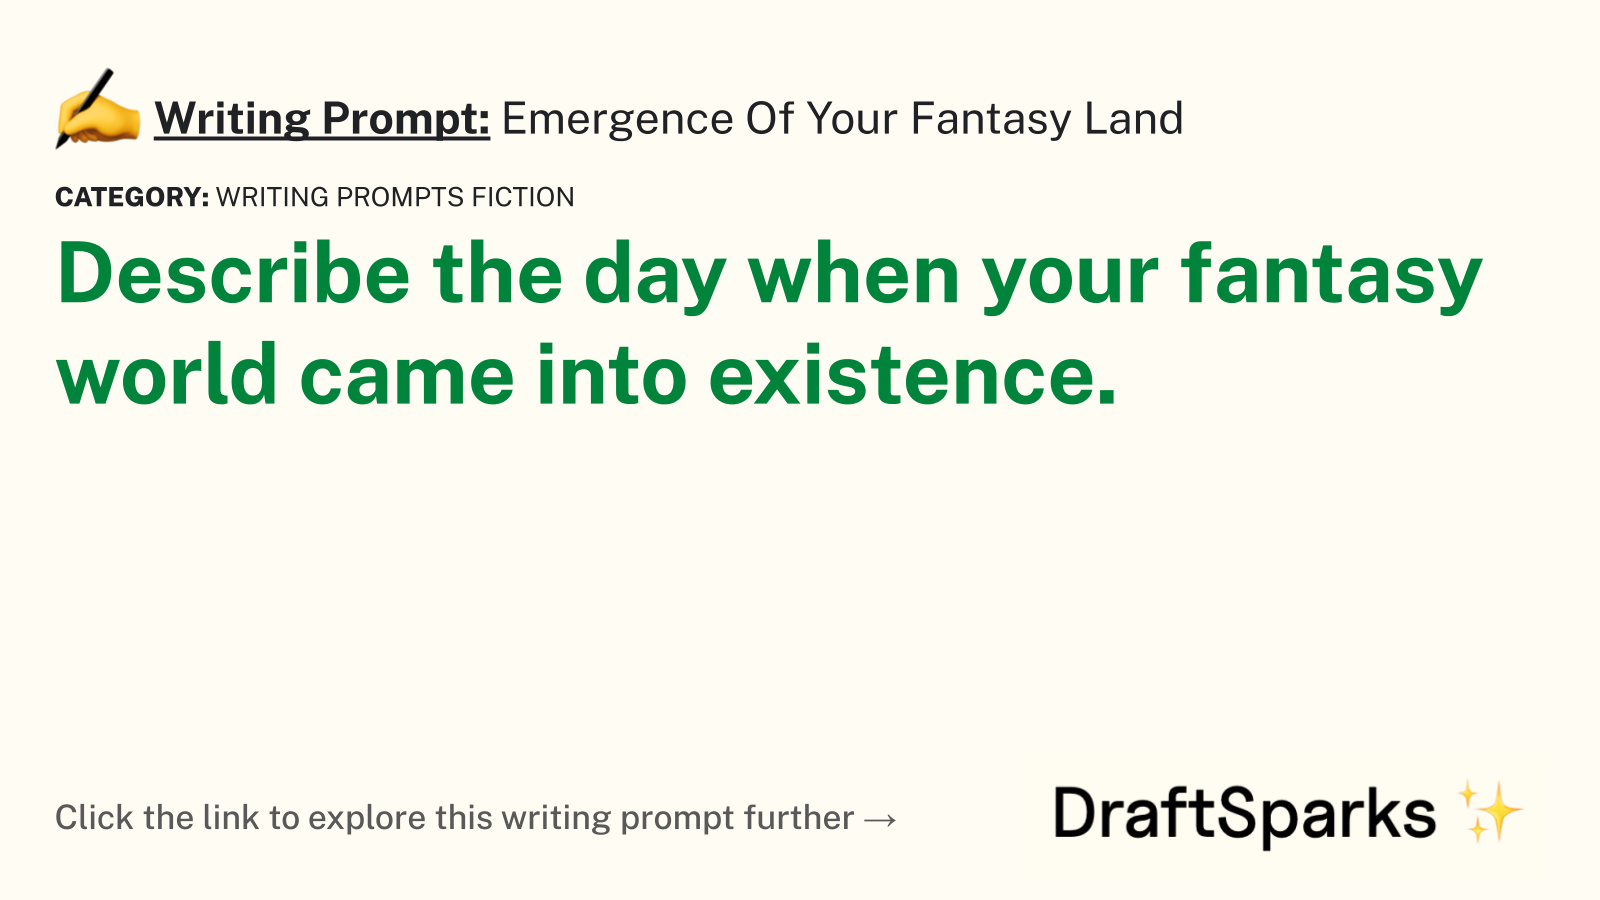 Emergence Of Your Fantasy Land